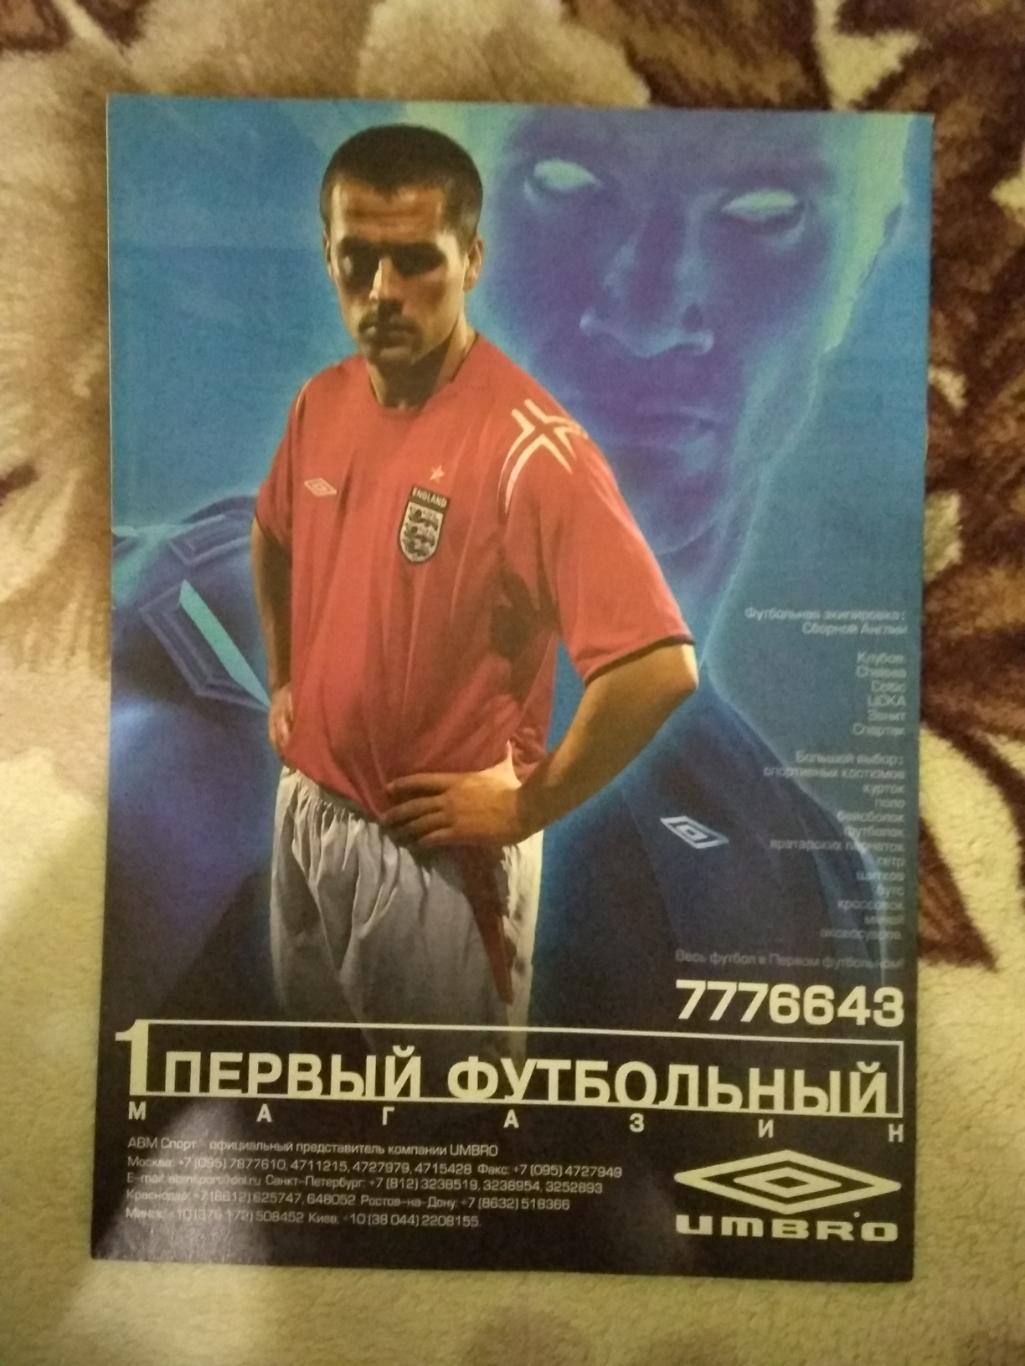 Журнал.Мой футбол №22 2004 г. (Чемпионат Европы) (постер). 2